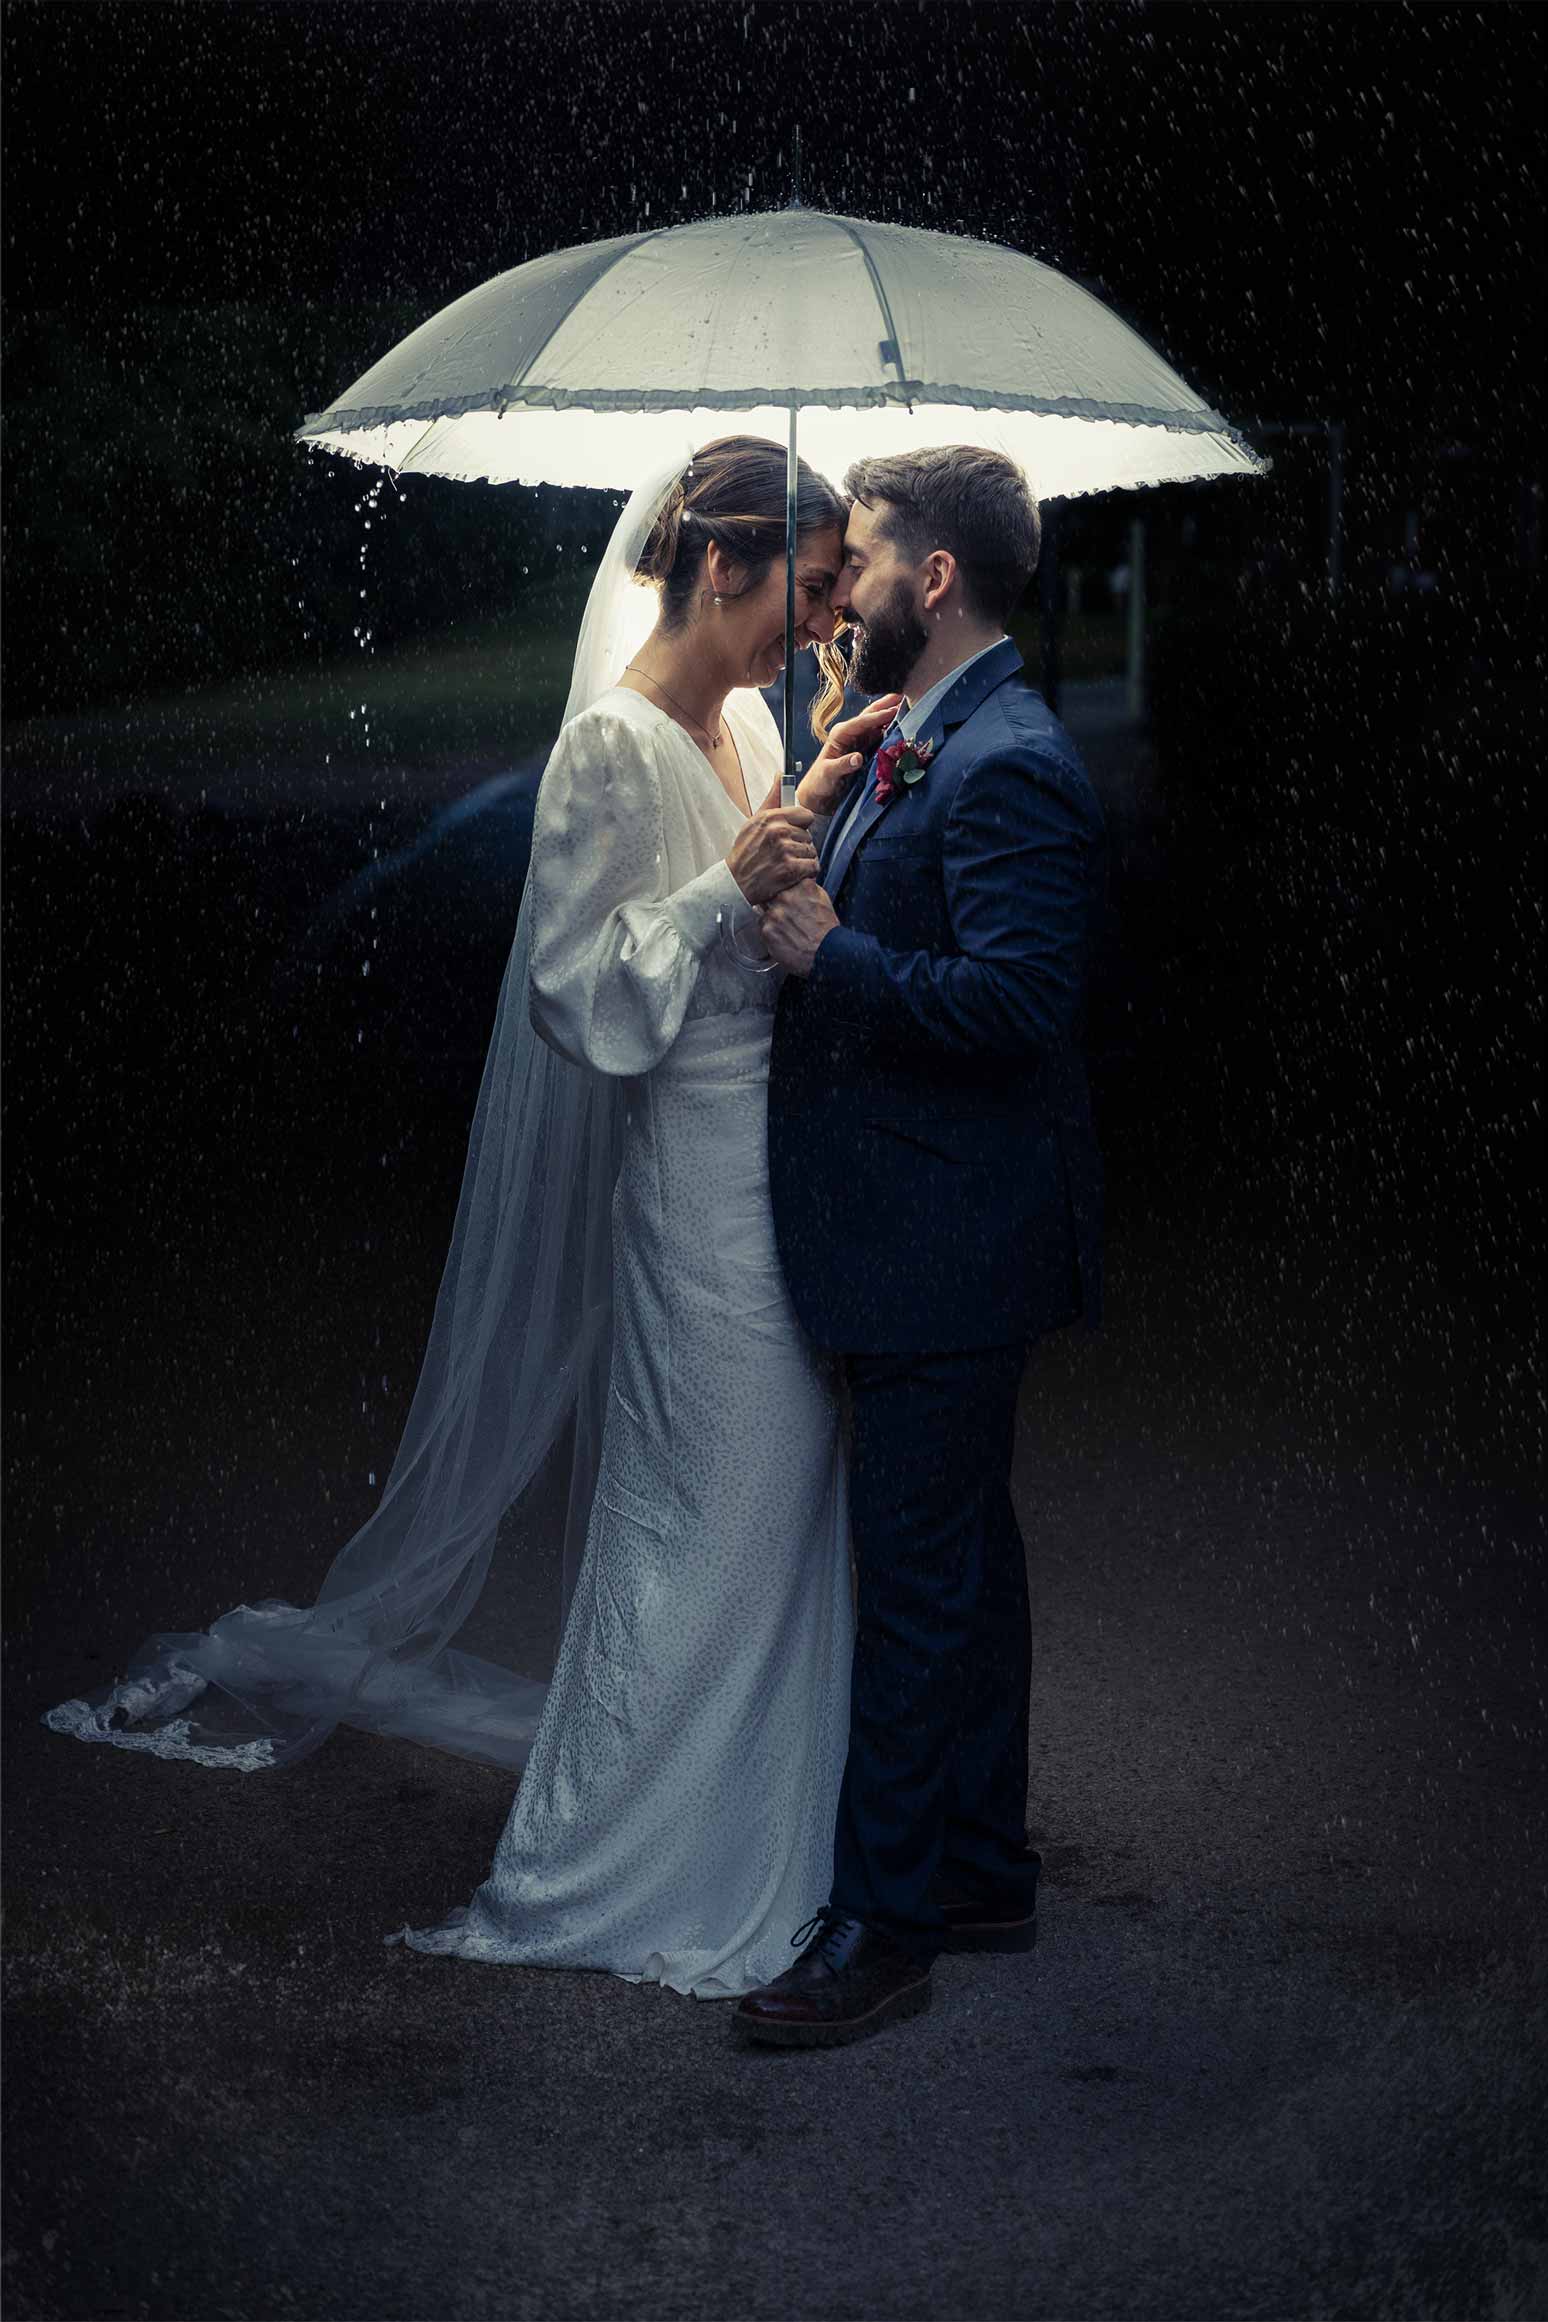 Newlyweds under an umbrella